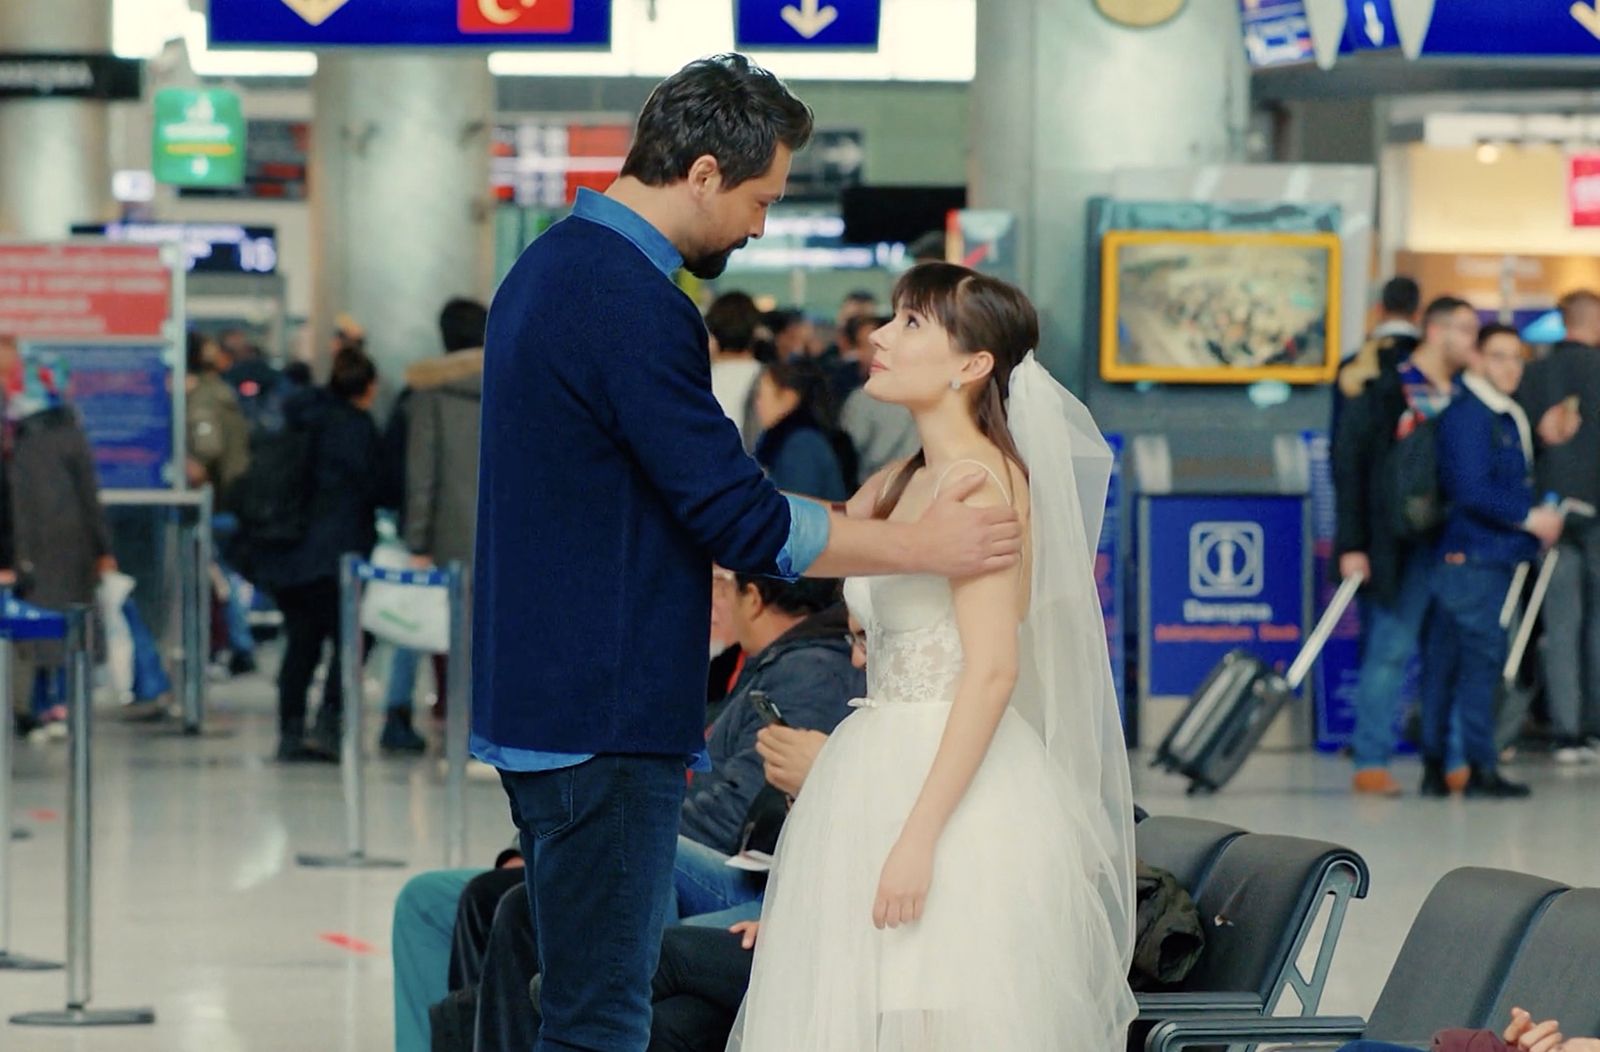 Alihan y Zeynep se reencuentran en el aeropuerto, en Pecado original